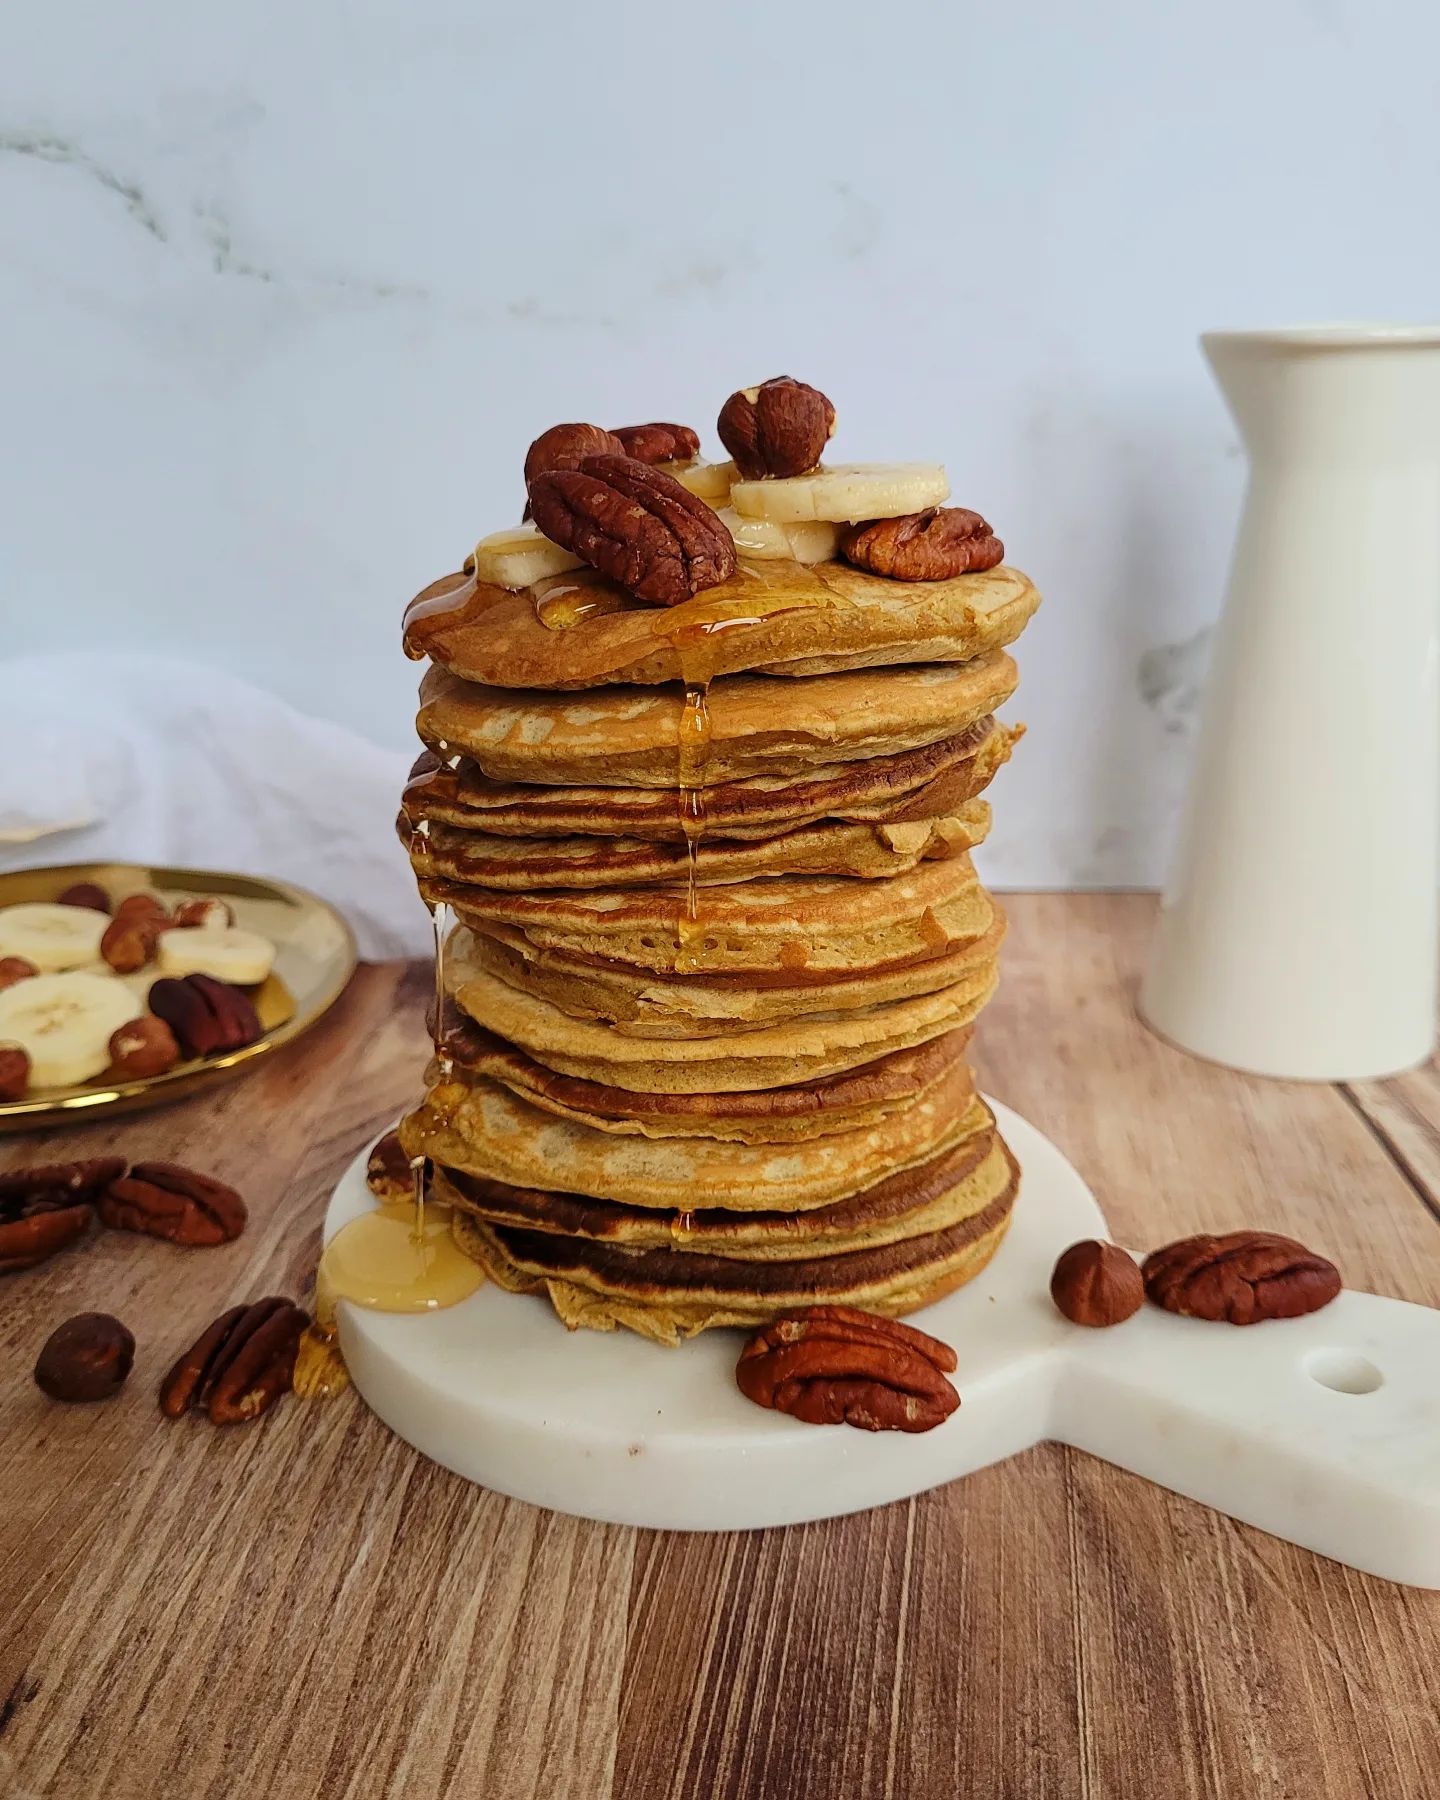 ▪︎PANCAKES MOELLEUX IG BAS▪︎ 

Qui en piquerait bien un ? 🙋‍♂️🙋🏼‍♀️ Je vous propose aujourd'hui une recette de pancakes. Rien de plus classique mais ils sont tellement moelleux et gourmands ! Et à IG bas bien sûr 😉 à mettre rapidement au menu de vos petits-déjeuners ou de votre futur brunch. 

La recette est disponible sur le site dans la rubrique "gaufres, crêpes et pancakes".
https://healthyliciouus.com/index.php/2022/01/12/pancakes-moelleux-ig-bas/
(Lien direct vers mon site healthyliciouus.com sur mon profil @healthyliciouus )

#healthyliciouus #healthy #delicious #pancakes #pancake #brunch #petitdej #petitdejeuner #recette #recetteigbas #regimeigbas #indexglycemiquebas #gourmand #foodporn #healthyfood #onmytable #mieuxmanger #eatbetter #food #photoculinaire #foodphotography #foodpic #collation #collationsaine #eat #recettefacile #recetterapide #cuisinefacile #cuisinesaine #recettesaine